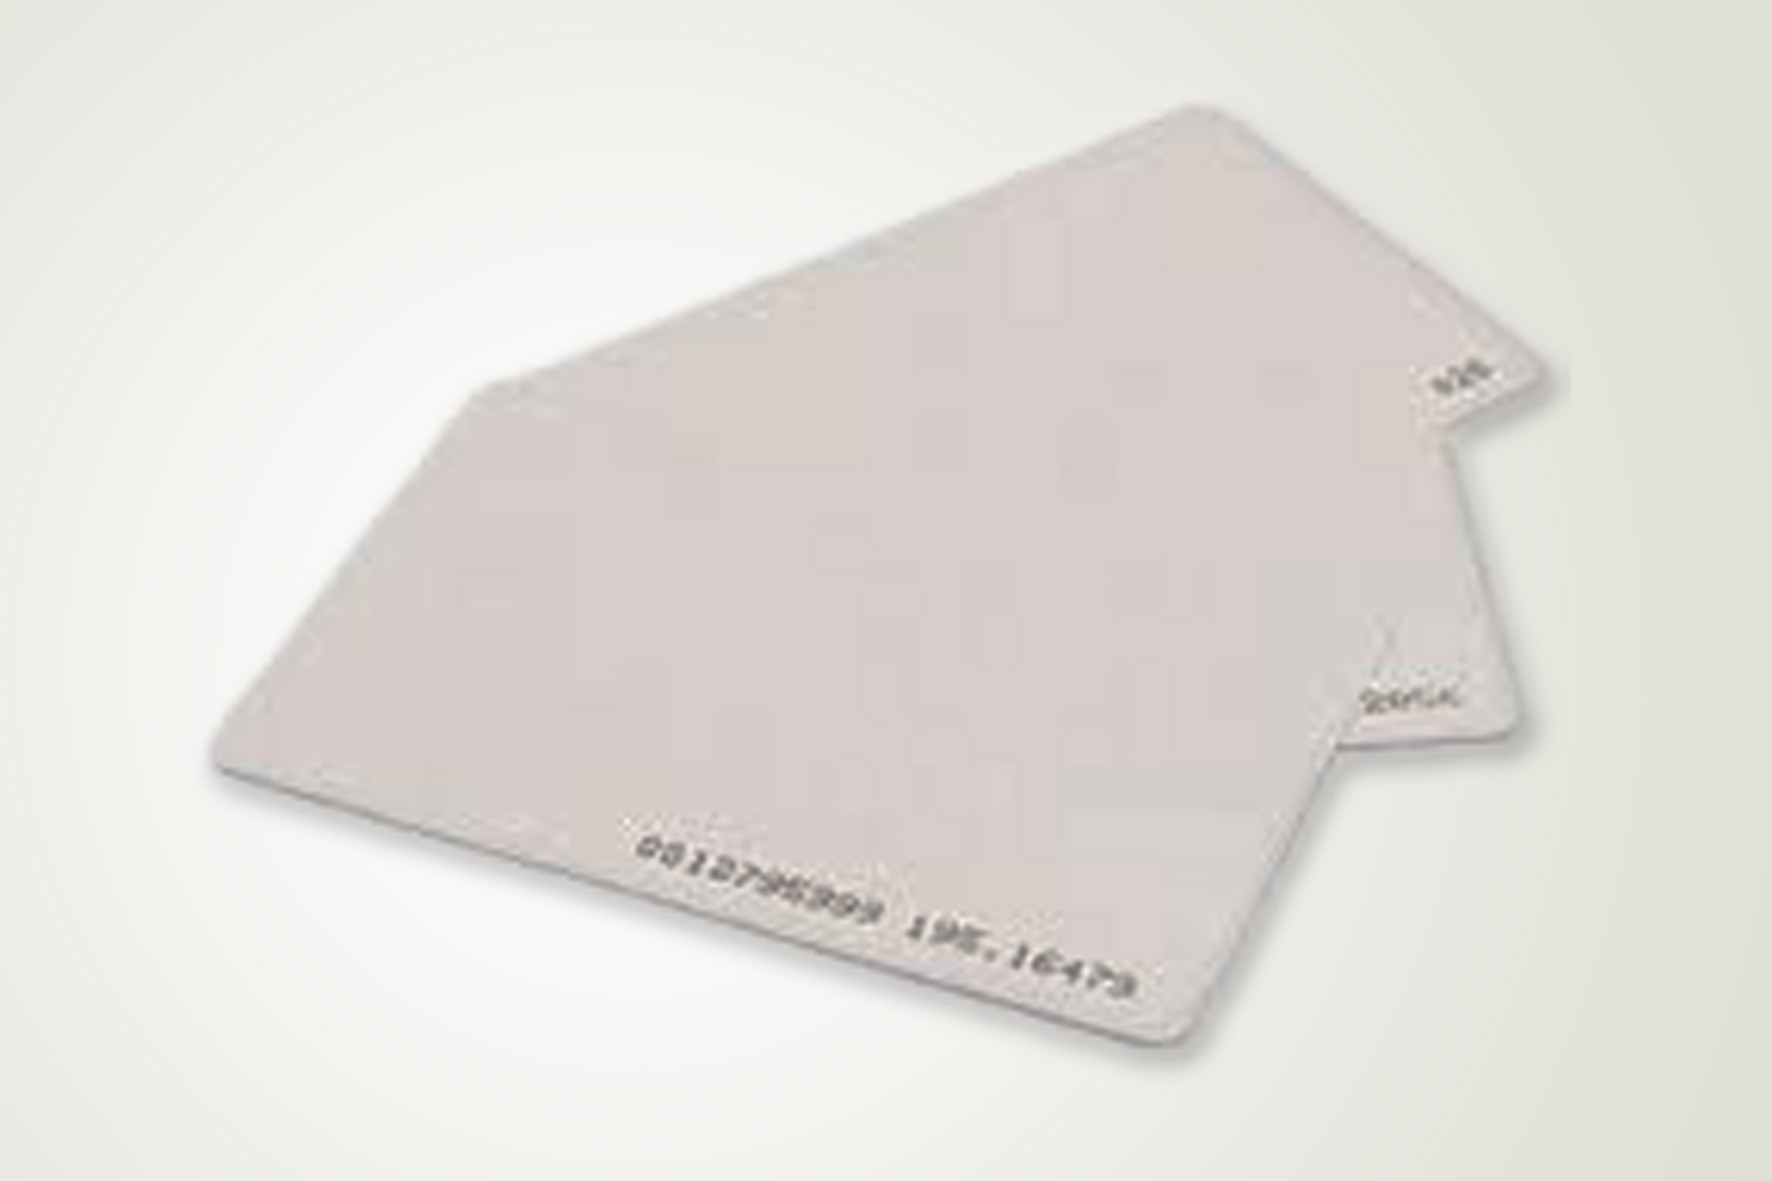 Impressão de Cartão em Pvc com Chip no Jardim das Oliveiras - Impressão de Cartão de Visita